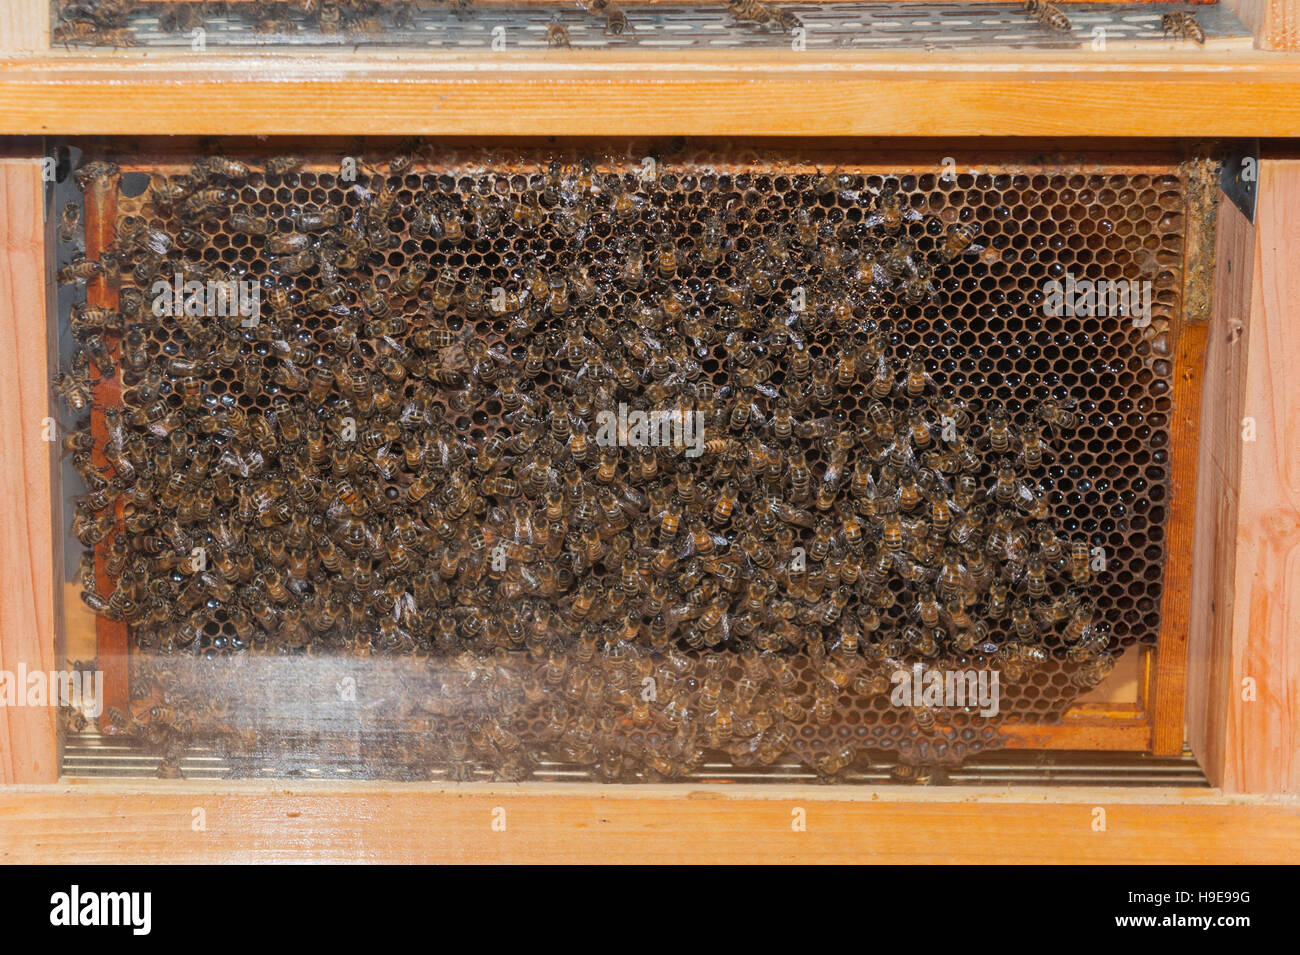 https://c8.alamy.com/comp/H9E99G/honey-bees-in-a-glass-hive-H9E99G.jpg